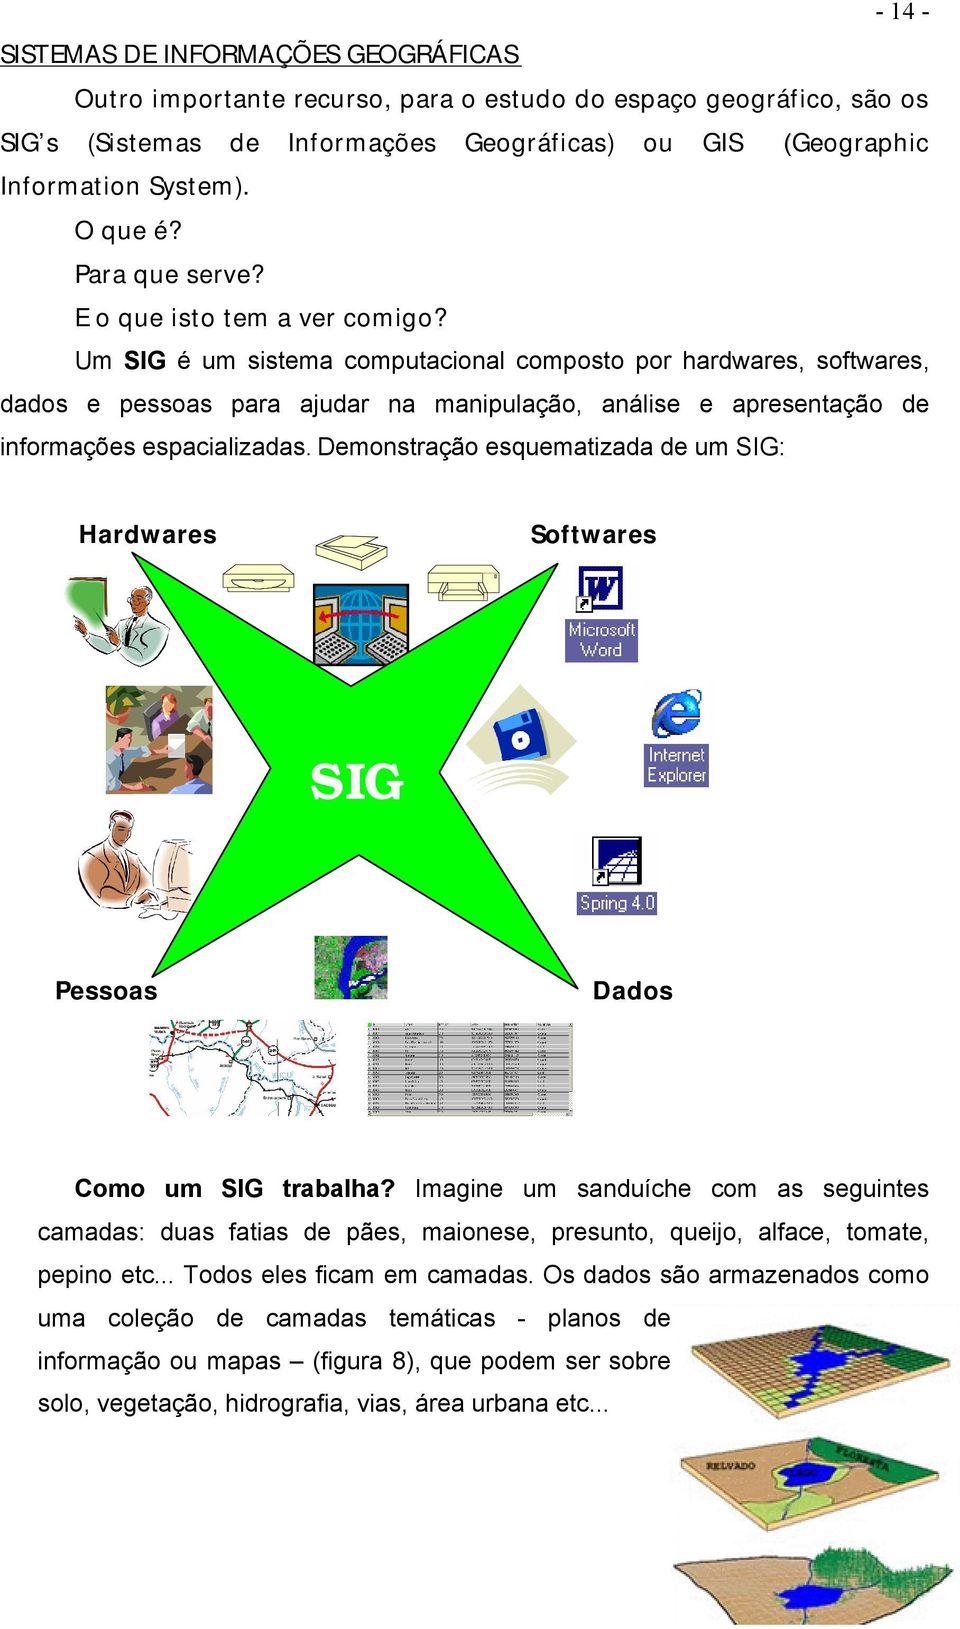 Um SIG é um sistema computacional composto por hardwares, softwares, dados e pessoas para ajudar na manipulação, análise e apresentação de informações espacializadas.